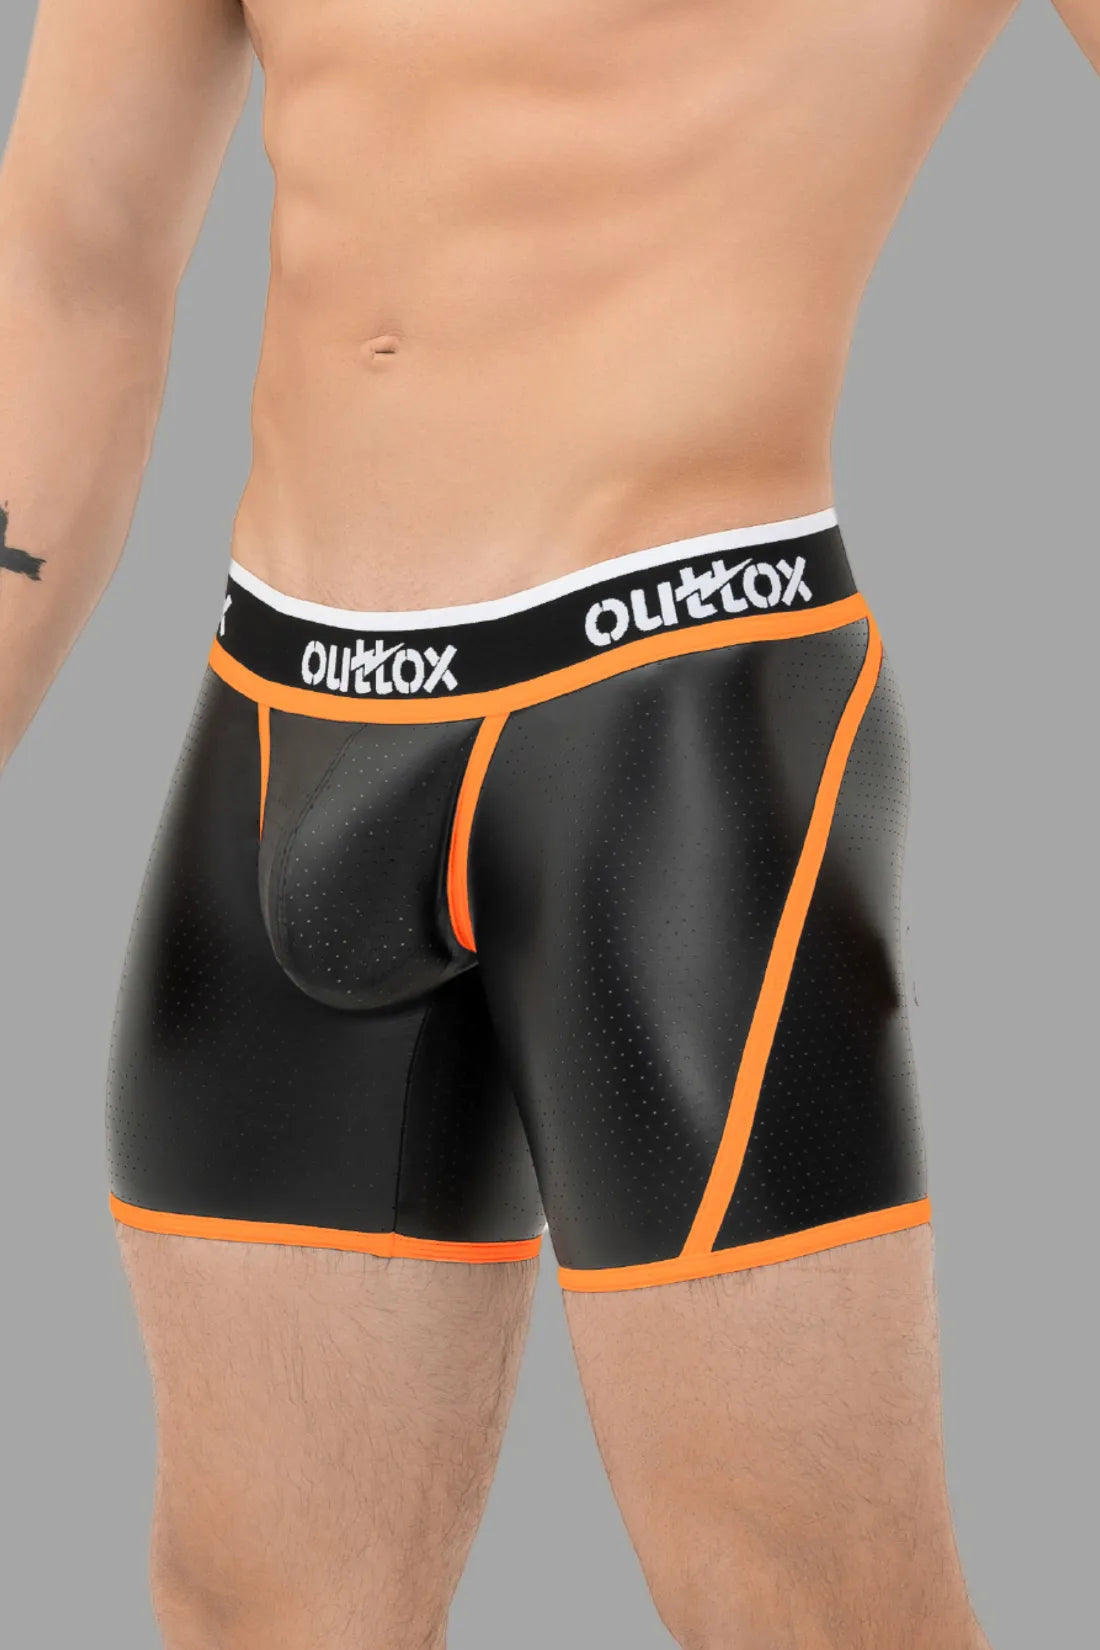 Outtox. Kurze Strumpfhose mit Wickel-Rücken. Schamkapsel mit Druckknopf. Schwarz und Orange